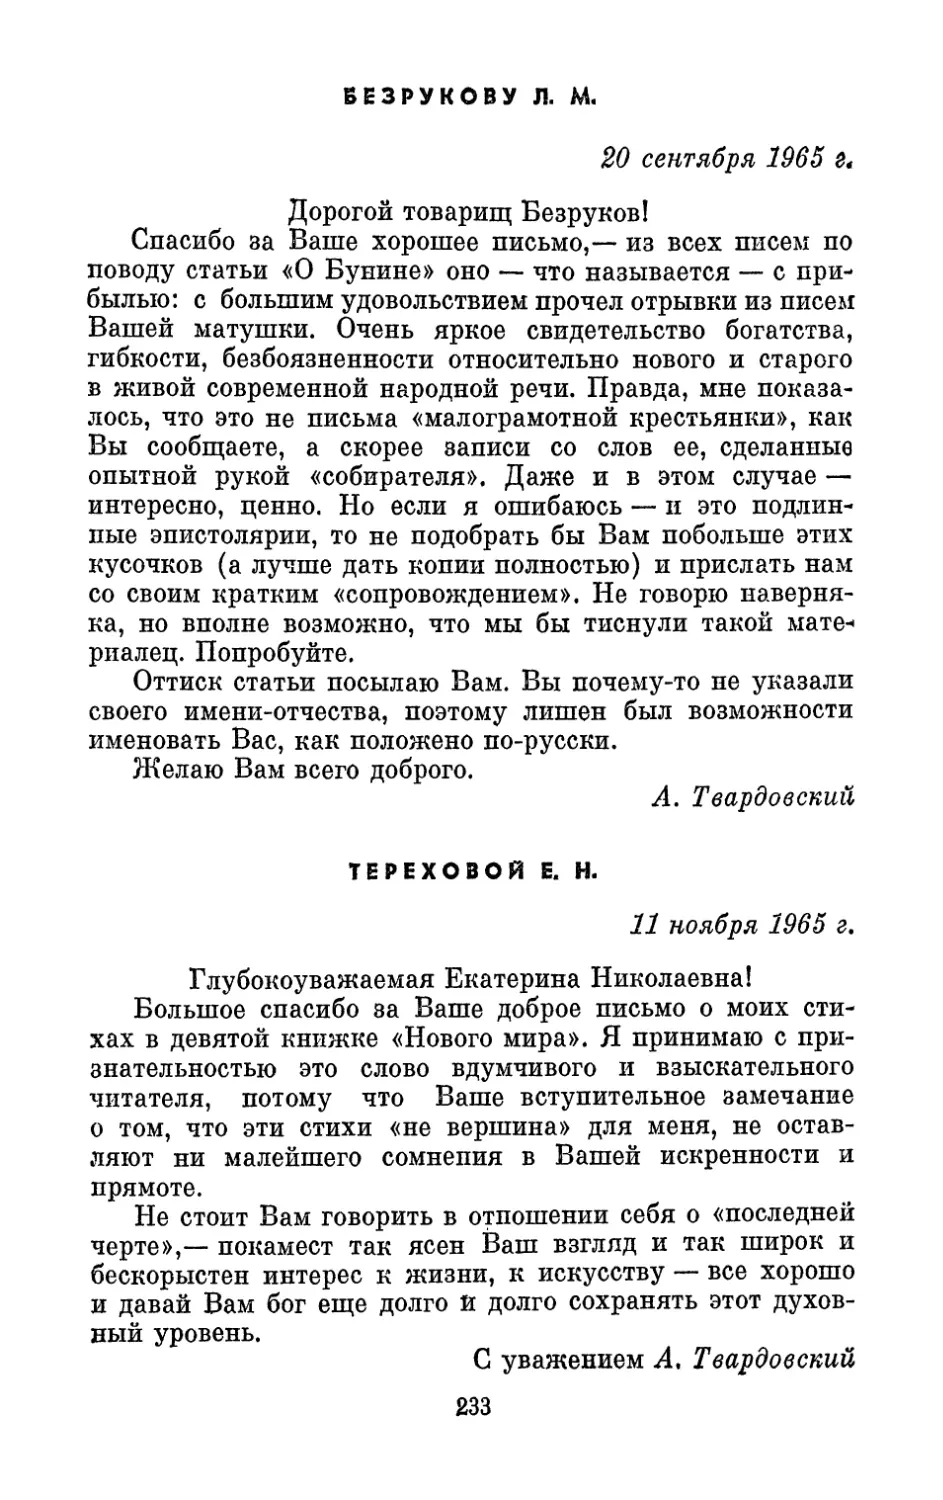 Безрукову Л. М., 20 сентября 1965 г.
Тереховой Е. Н., 11 ноября 1965 г.